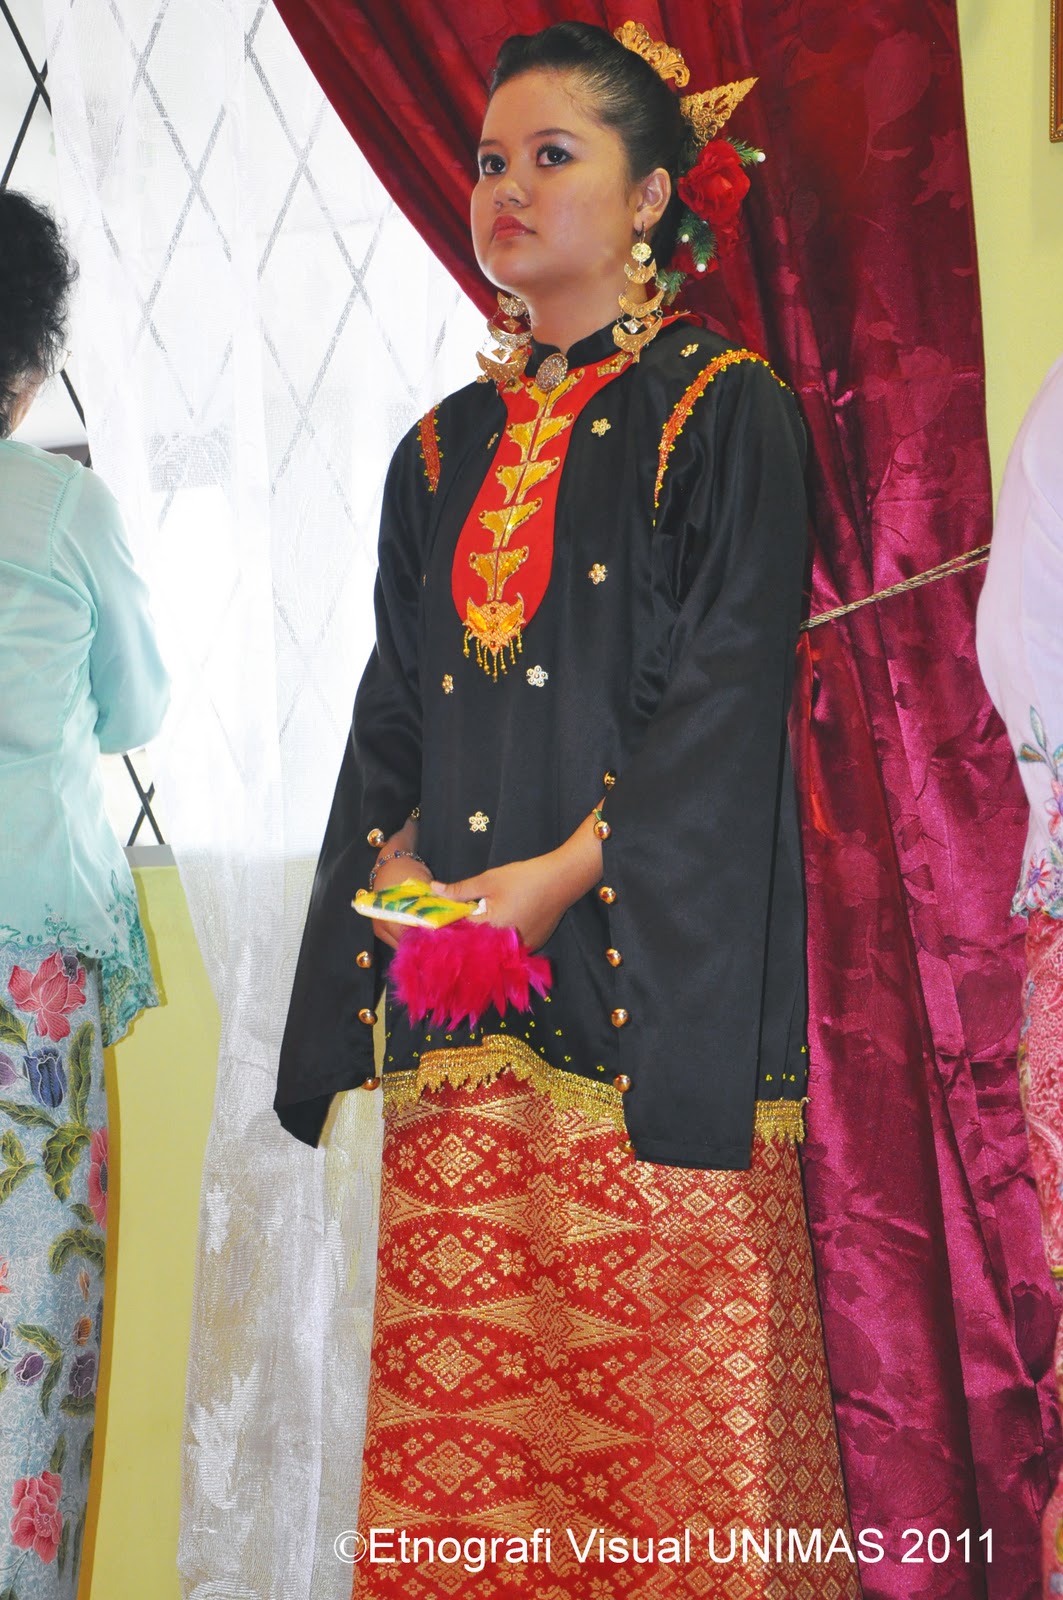 Melanau baju tradisional PAKAIAN TRADISIONAL